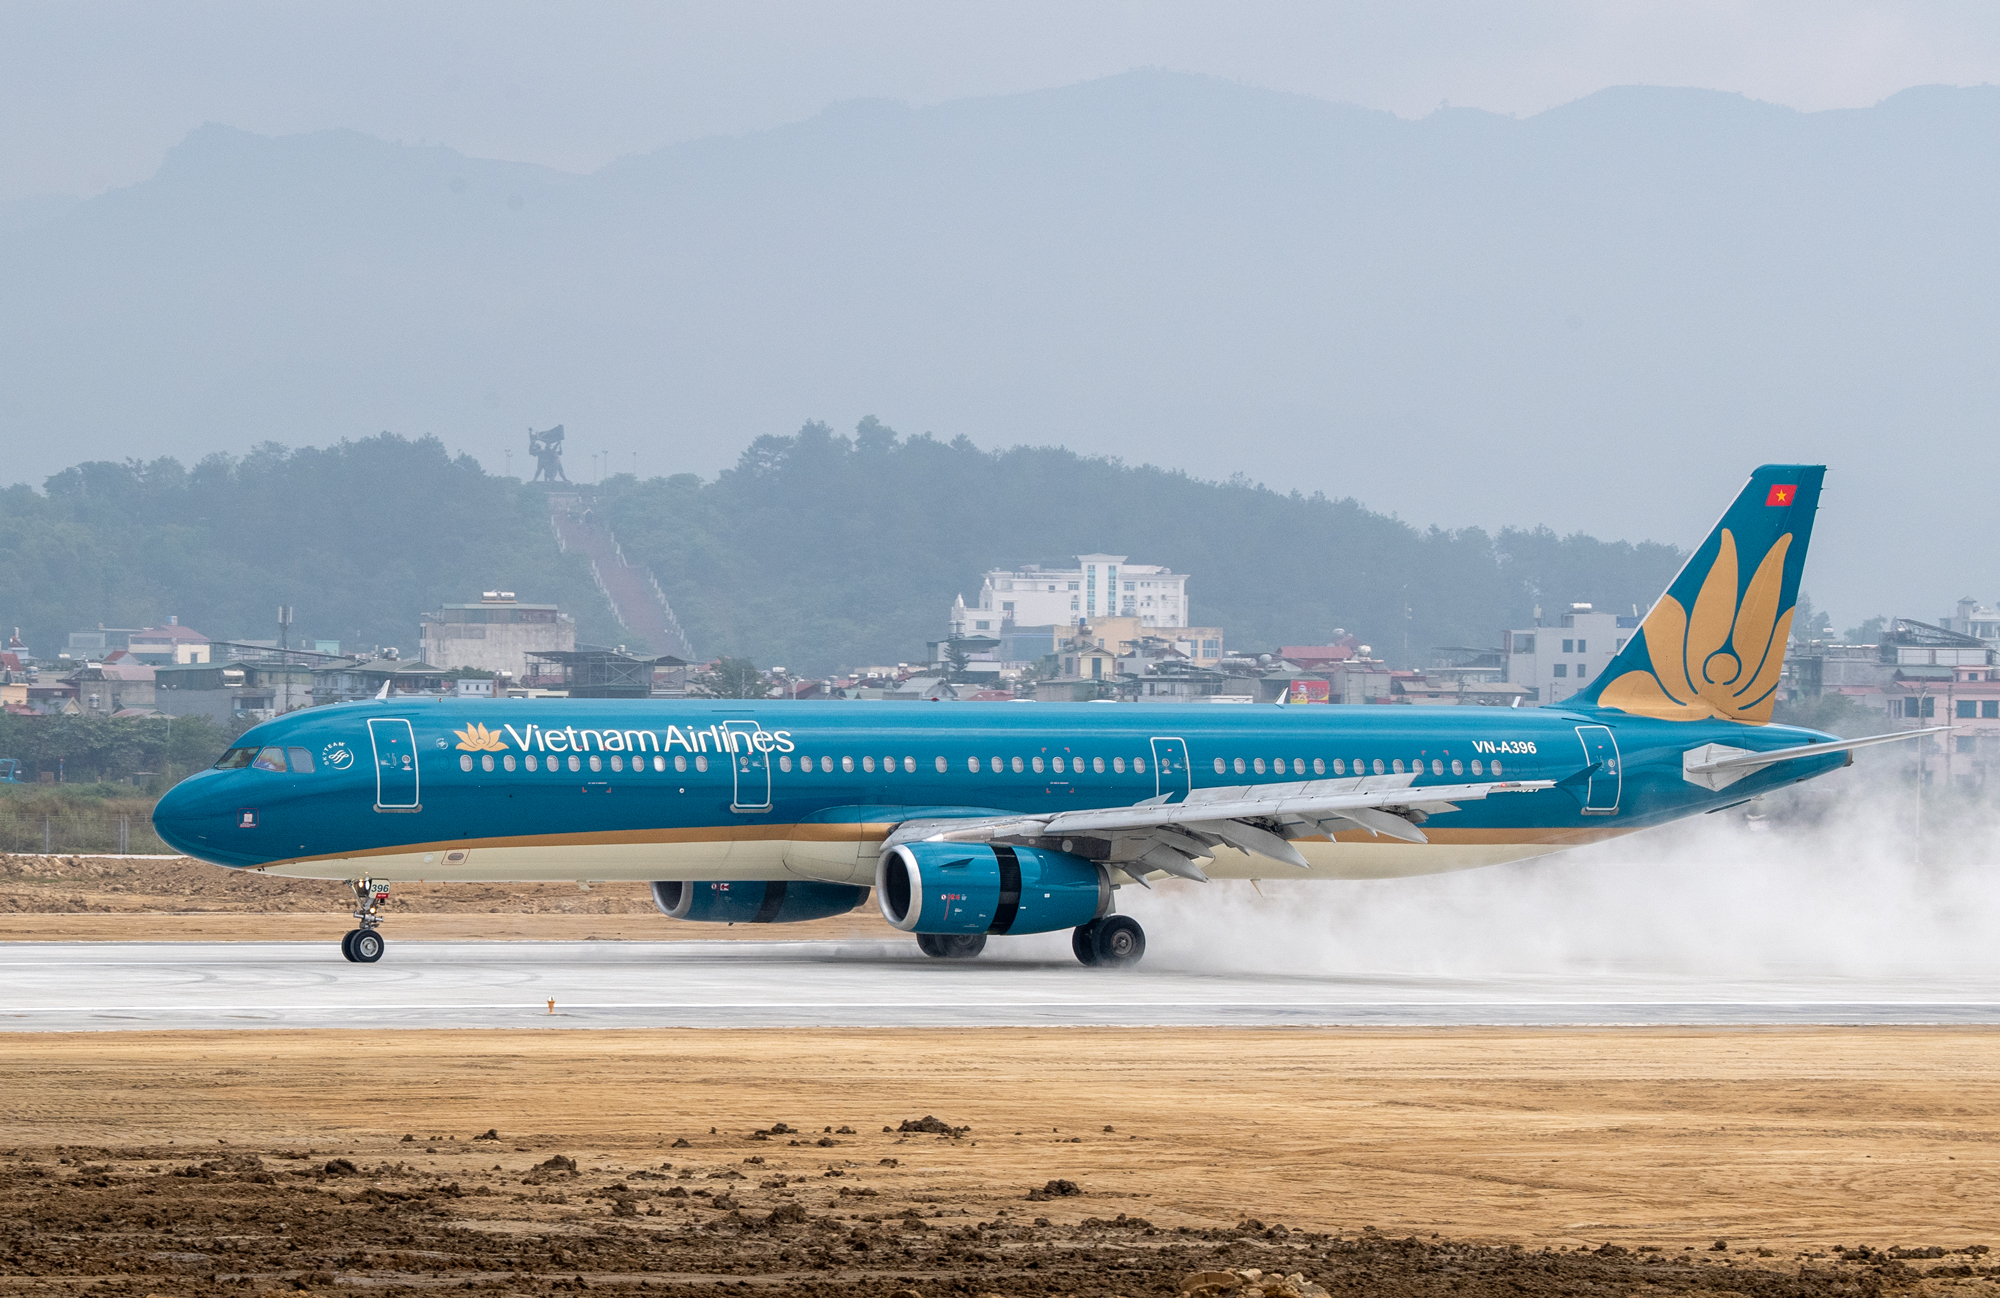 Sân bay Điện Biên đón máy bay cỡ lớn đầu tiên trong lịch sử  - Ảnh 2.